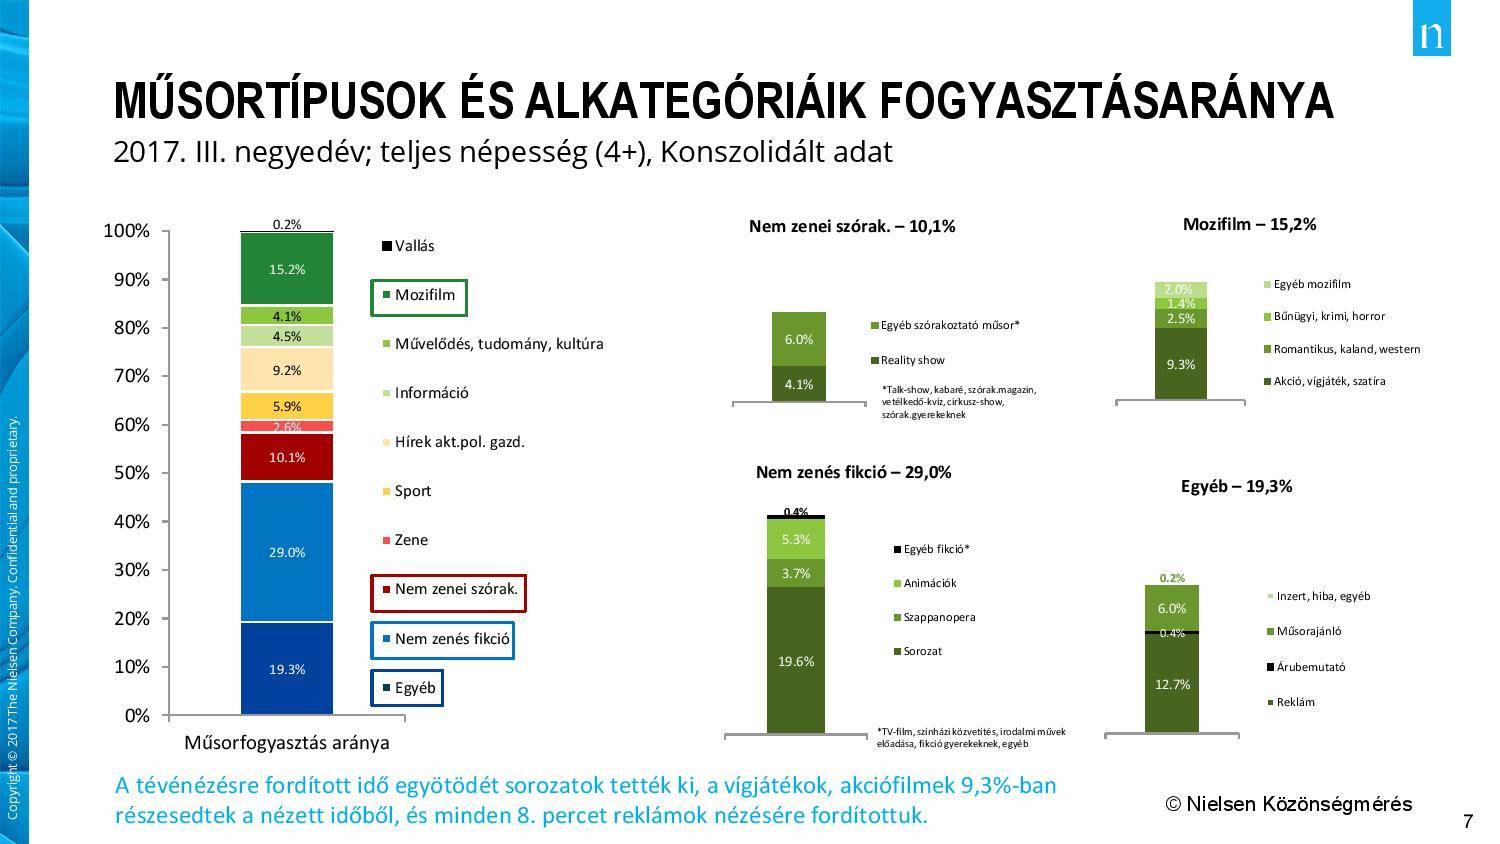 A műsortípusok és alkategóriák fogyasztásaránya. Forrás: Nielsen Közönségmérés/24.hu